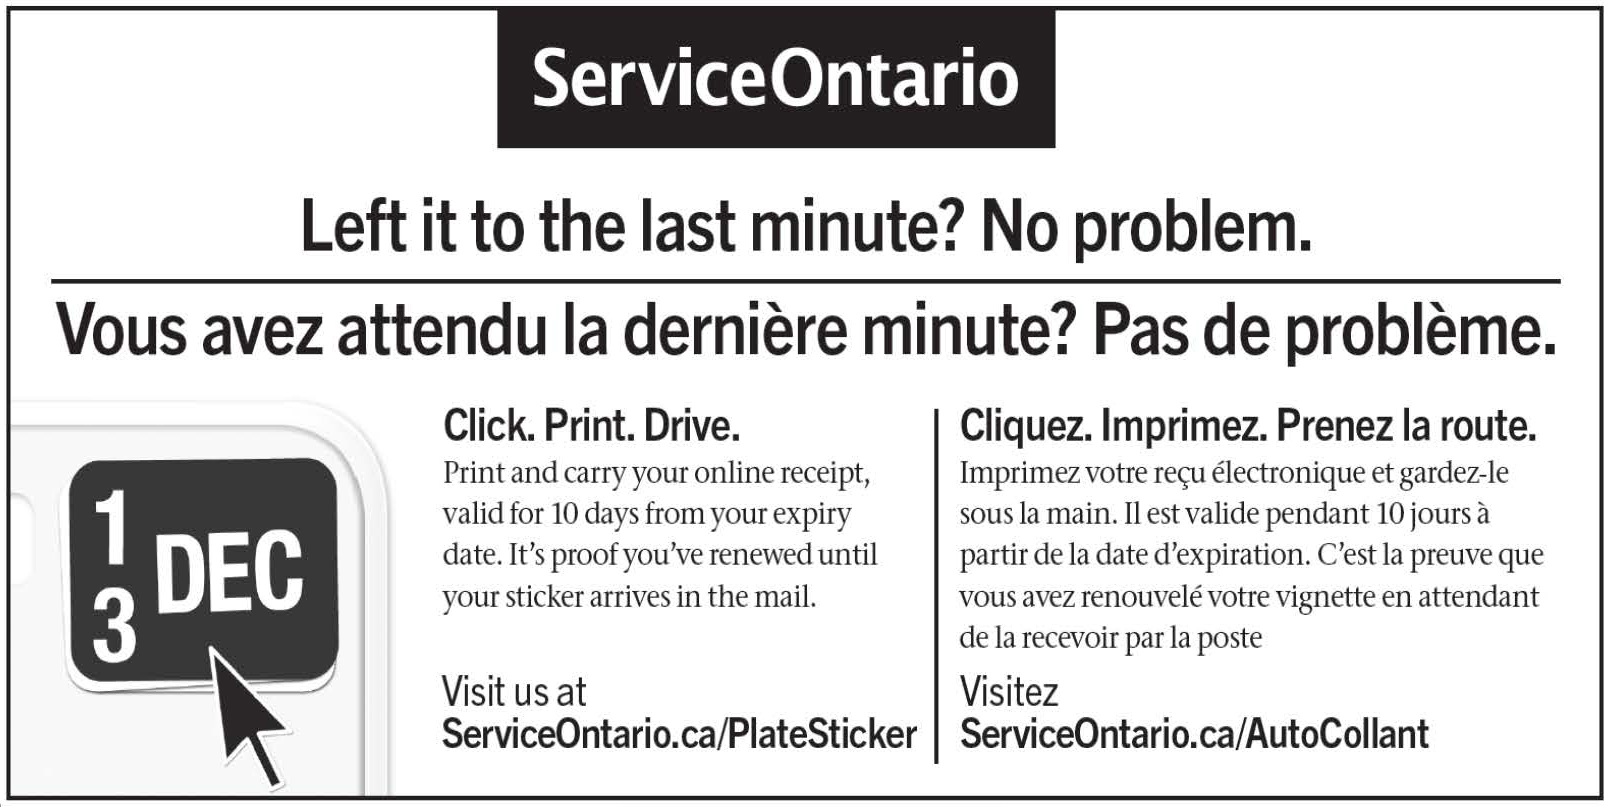 L’image ci-dessus provient du site Web de Service Ontario. Il s’agit d’une publicité de Service Ontario indiquant comment renouveler votre vignette d’immatriculation. On peut y lire le texte suivant : « Vous avez attend la dernière minute? Pas de problème. Cliquez. Imprimez. Prenez la route. Imprimez votre reçu électronique et gardez-le sous la main. It est valide pendant 10 jours à partir de la date d’expiration. C’est la preuve que vous avez renouvelé votre vignette en attendant de la recevoir par la poste. Visitez ServiceOntario.ca/AutoCollant »